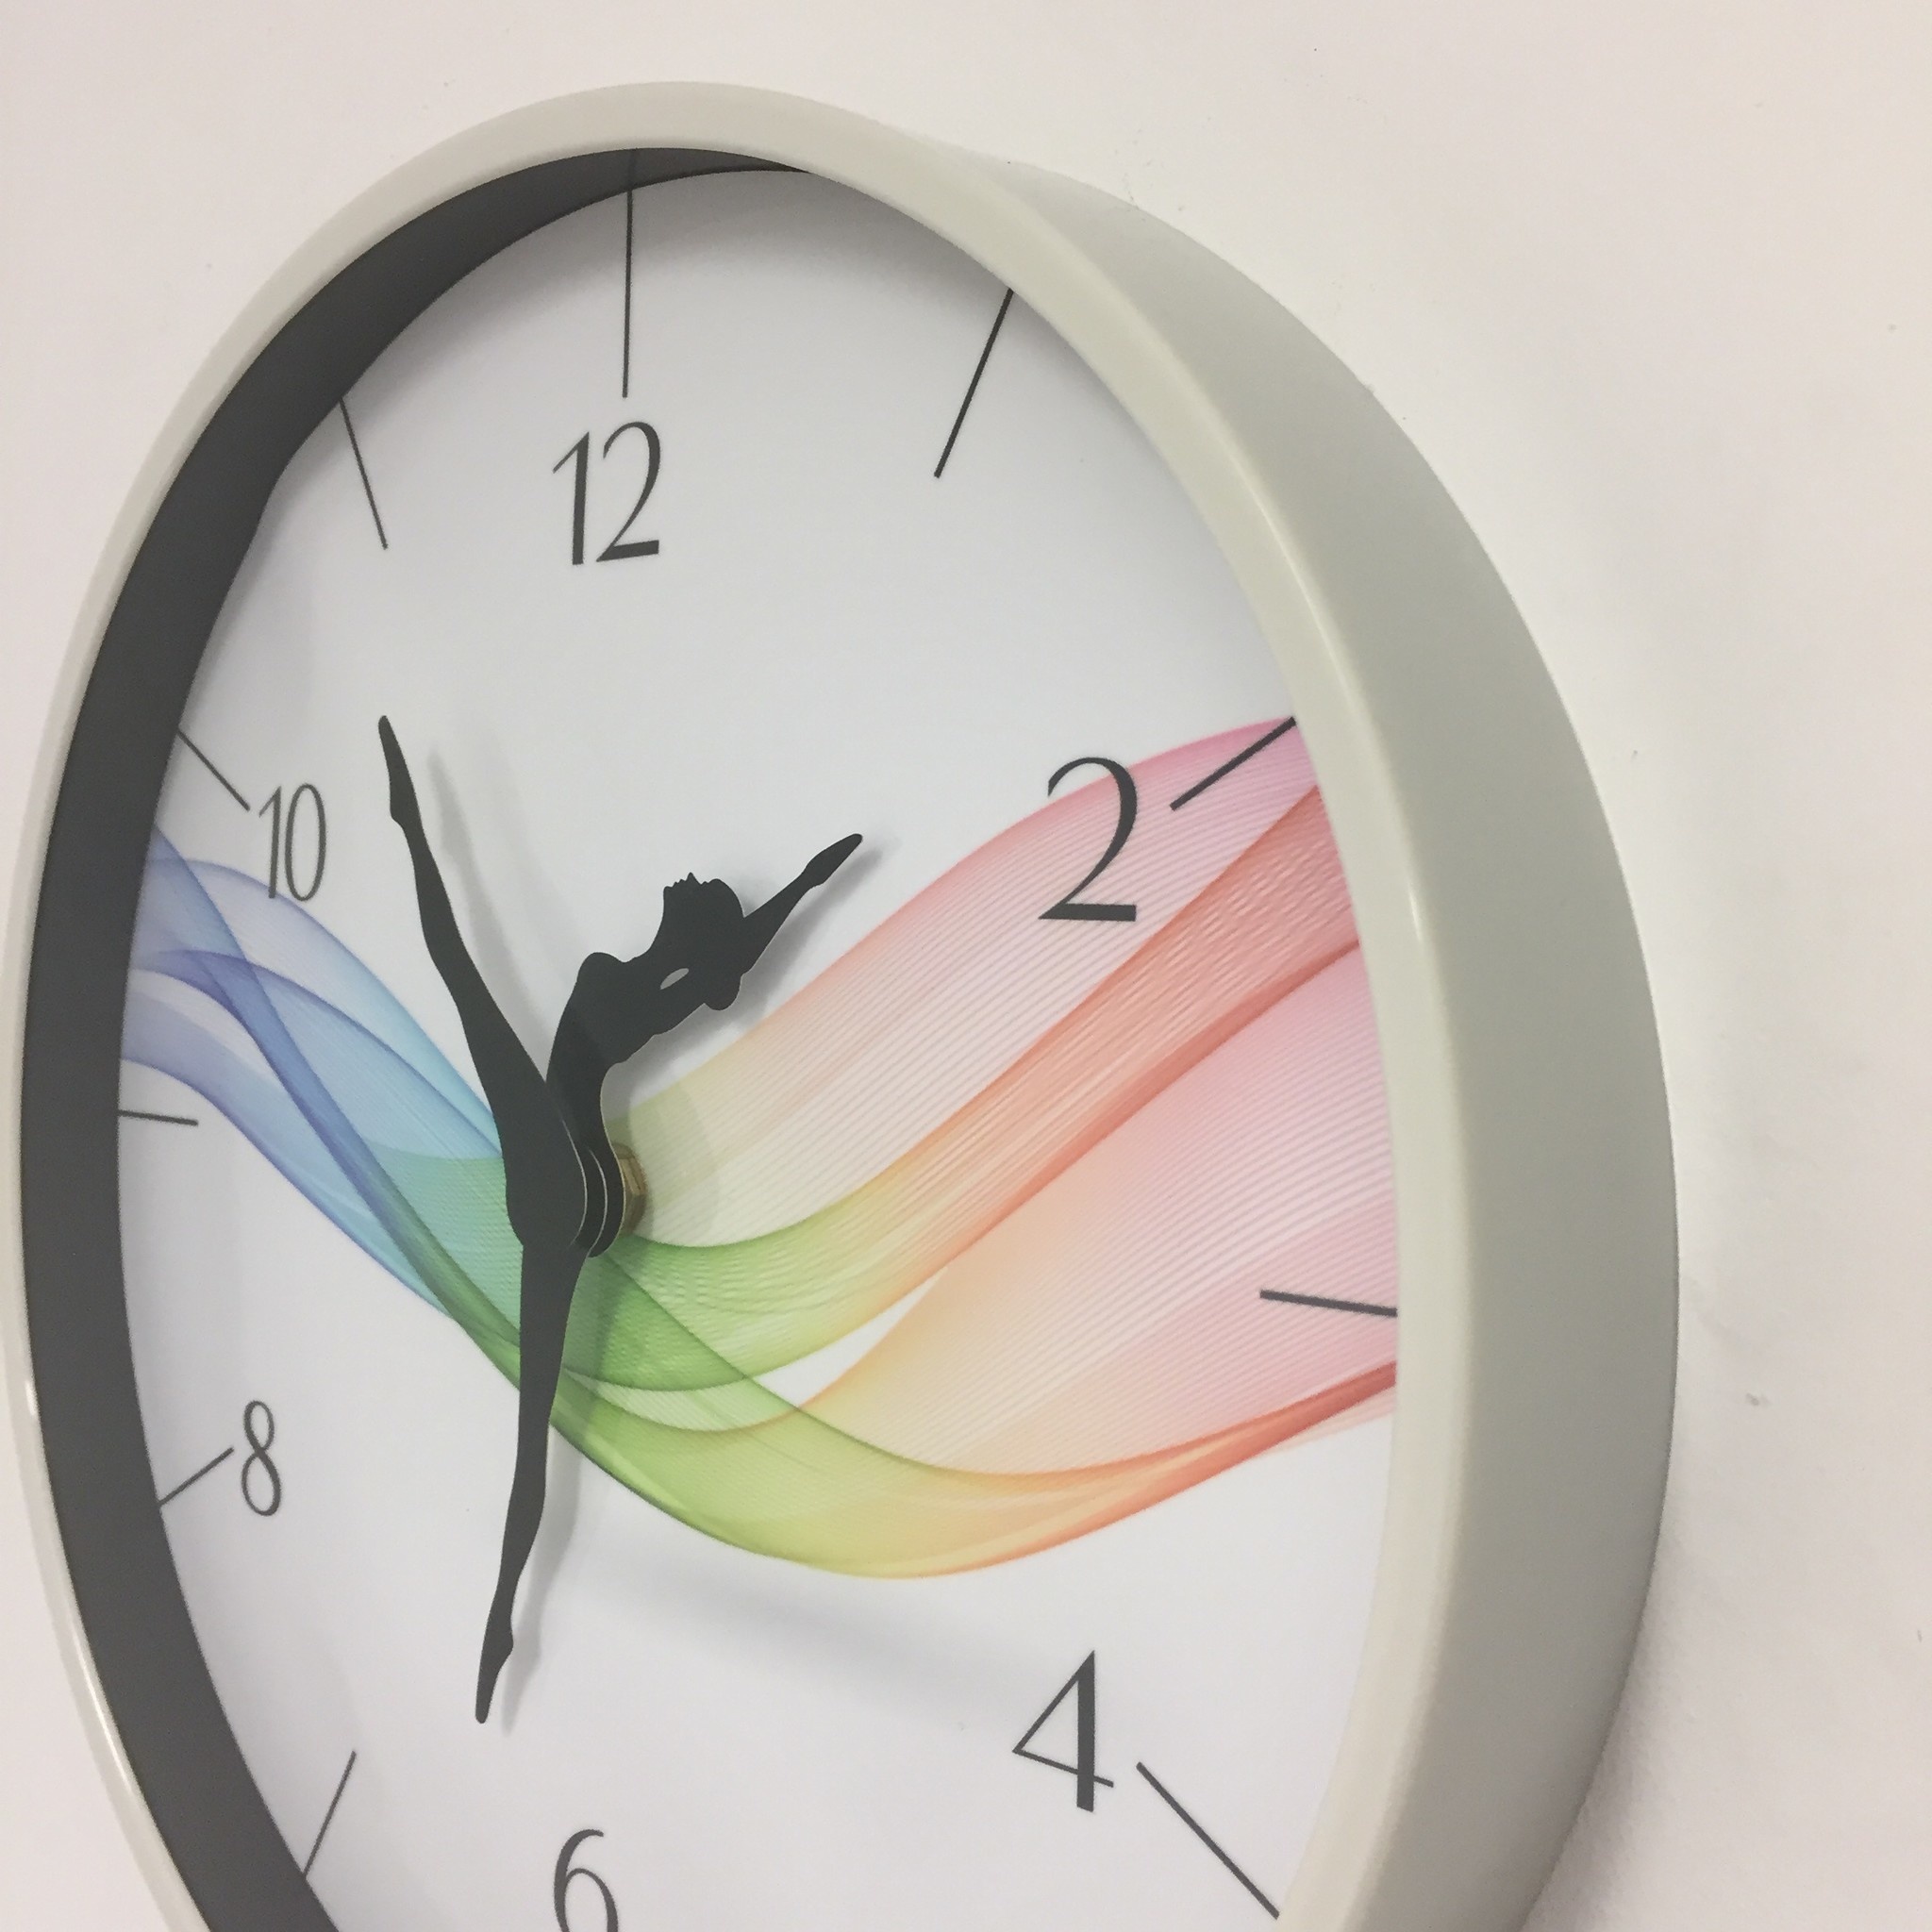 NiceTime Design - wall clock dancer wave modern design